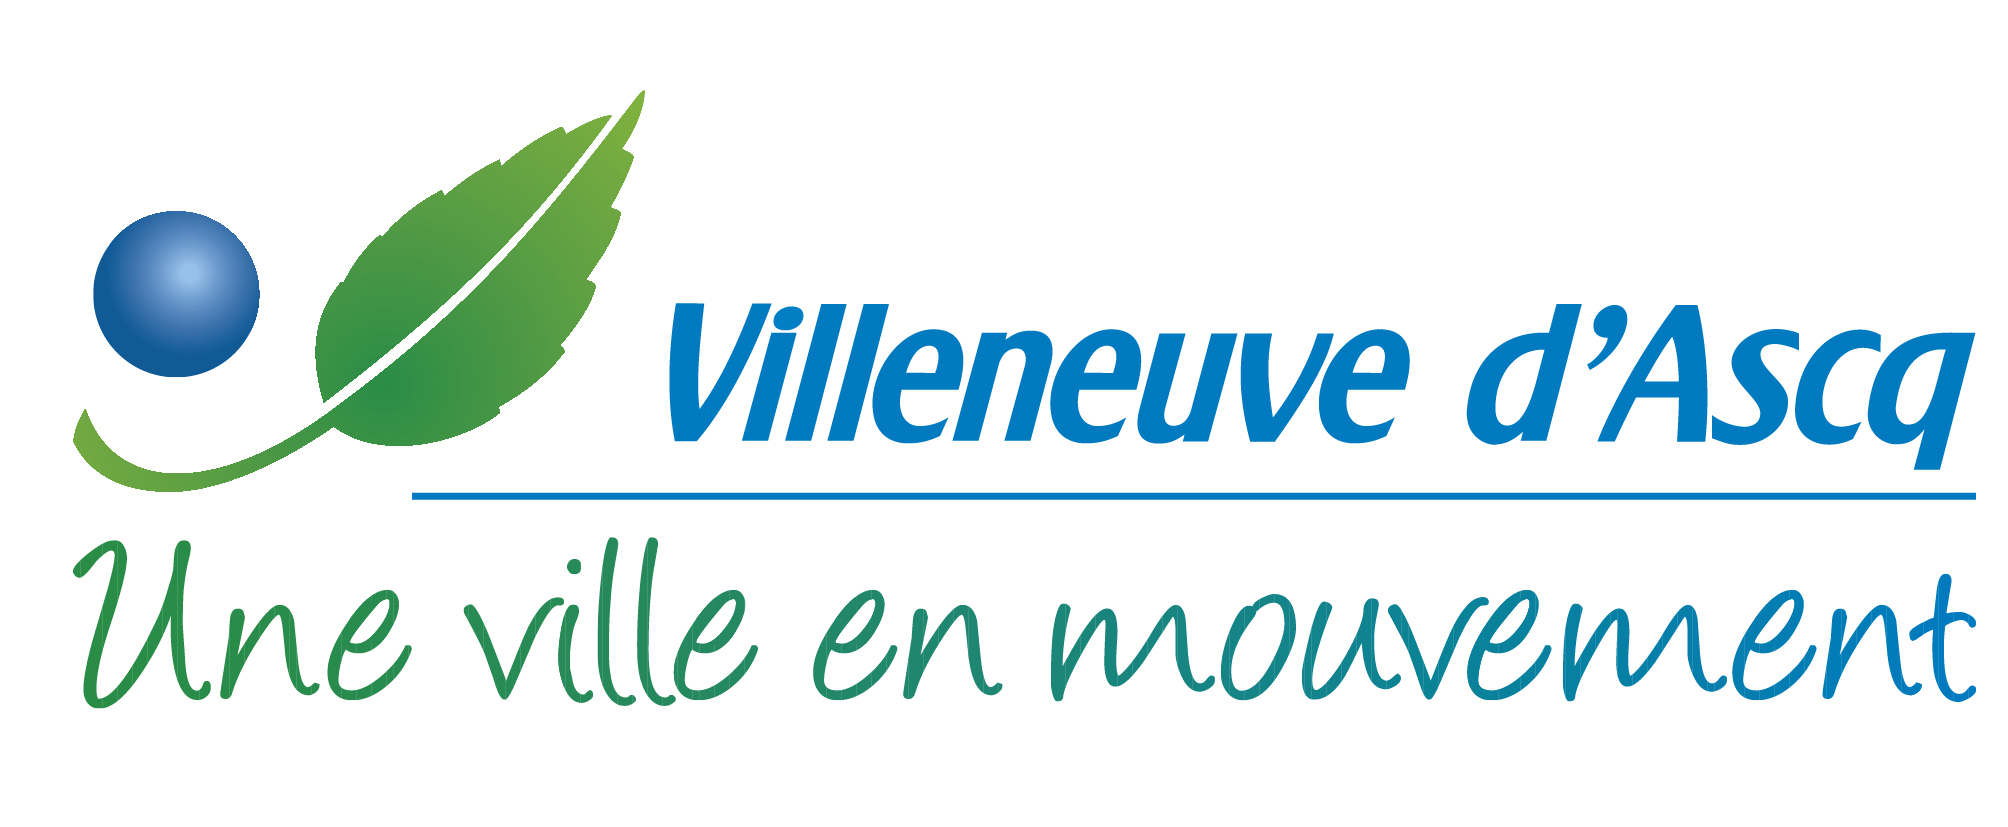 Logo de la ville de Villeneuve d'Ascq